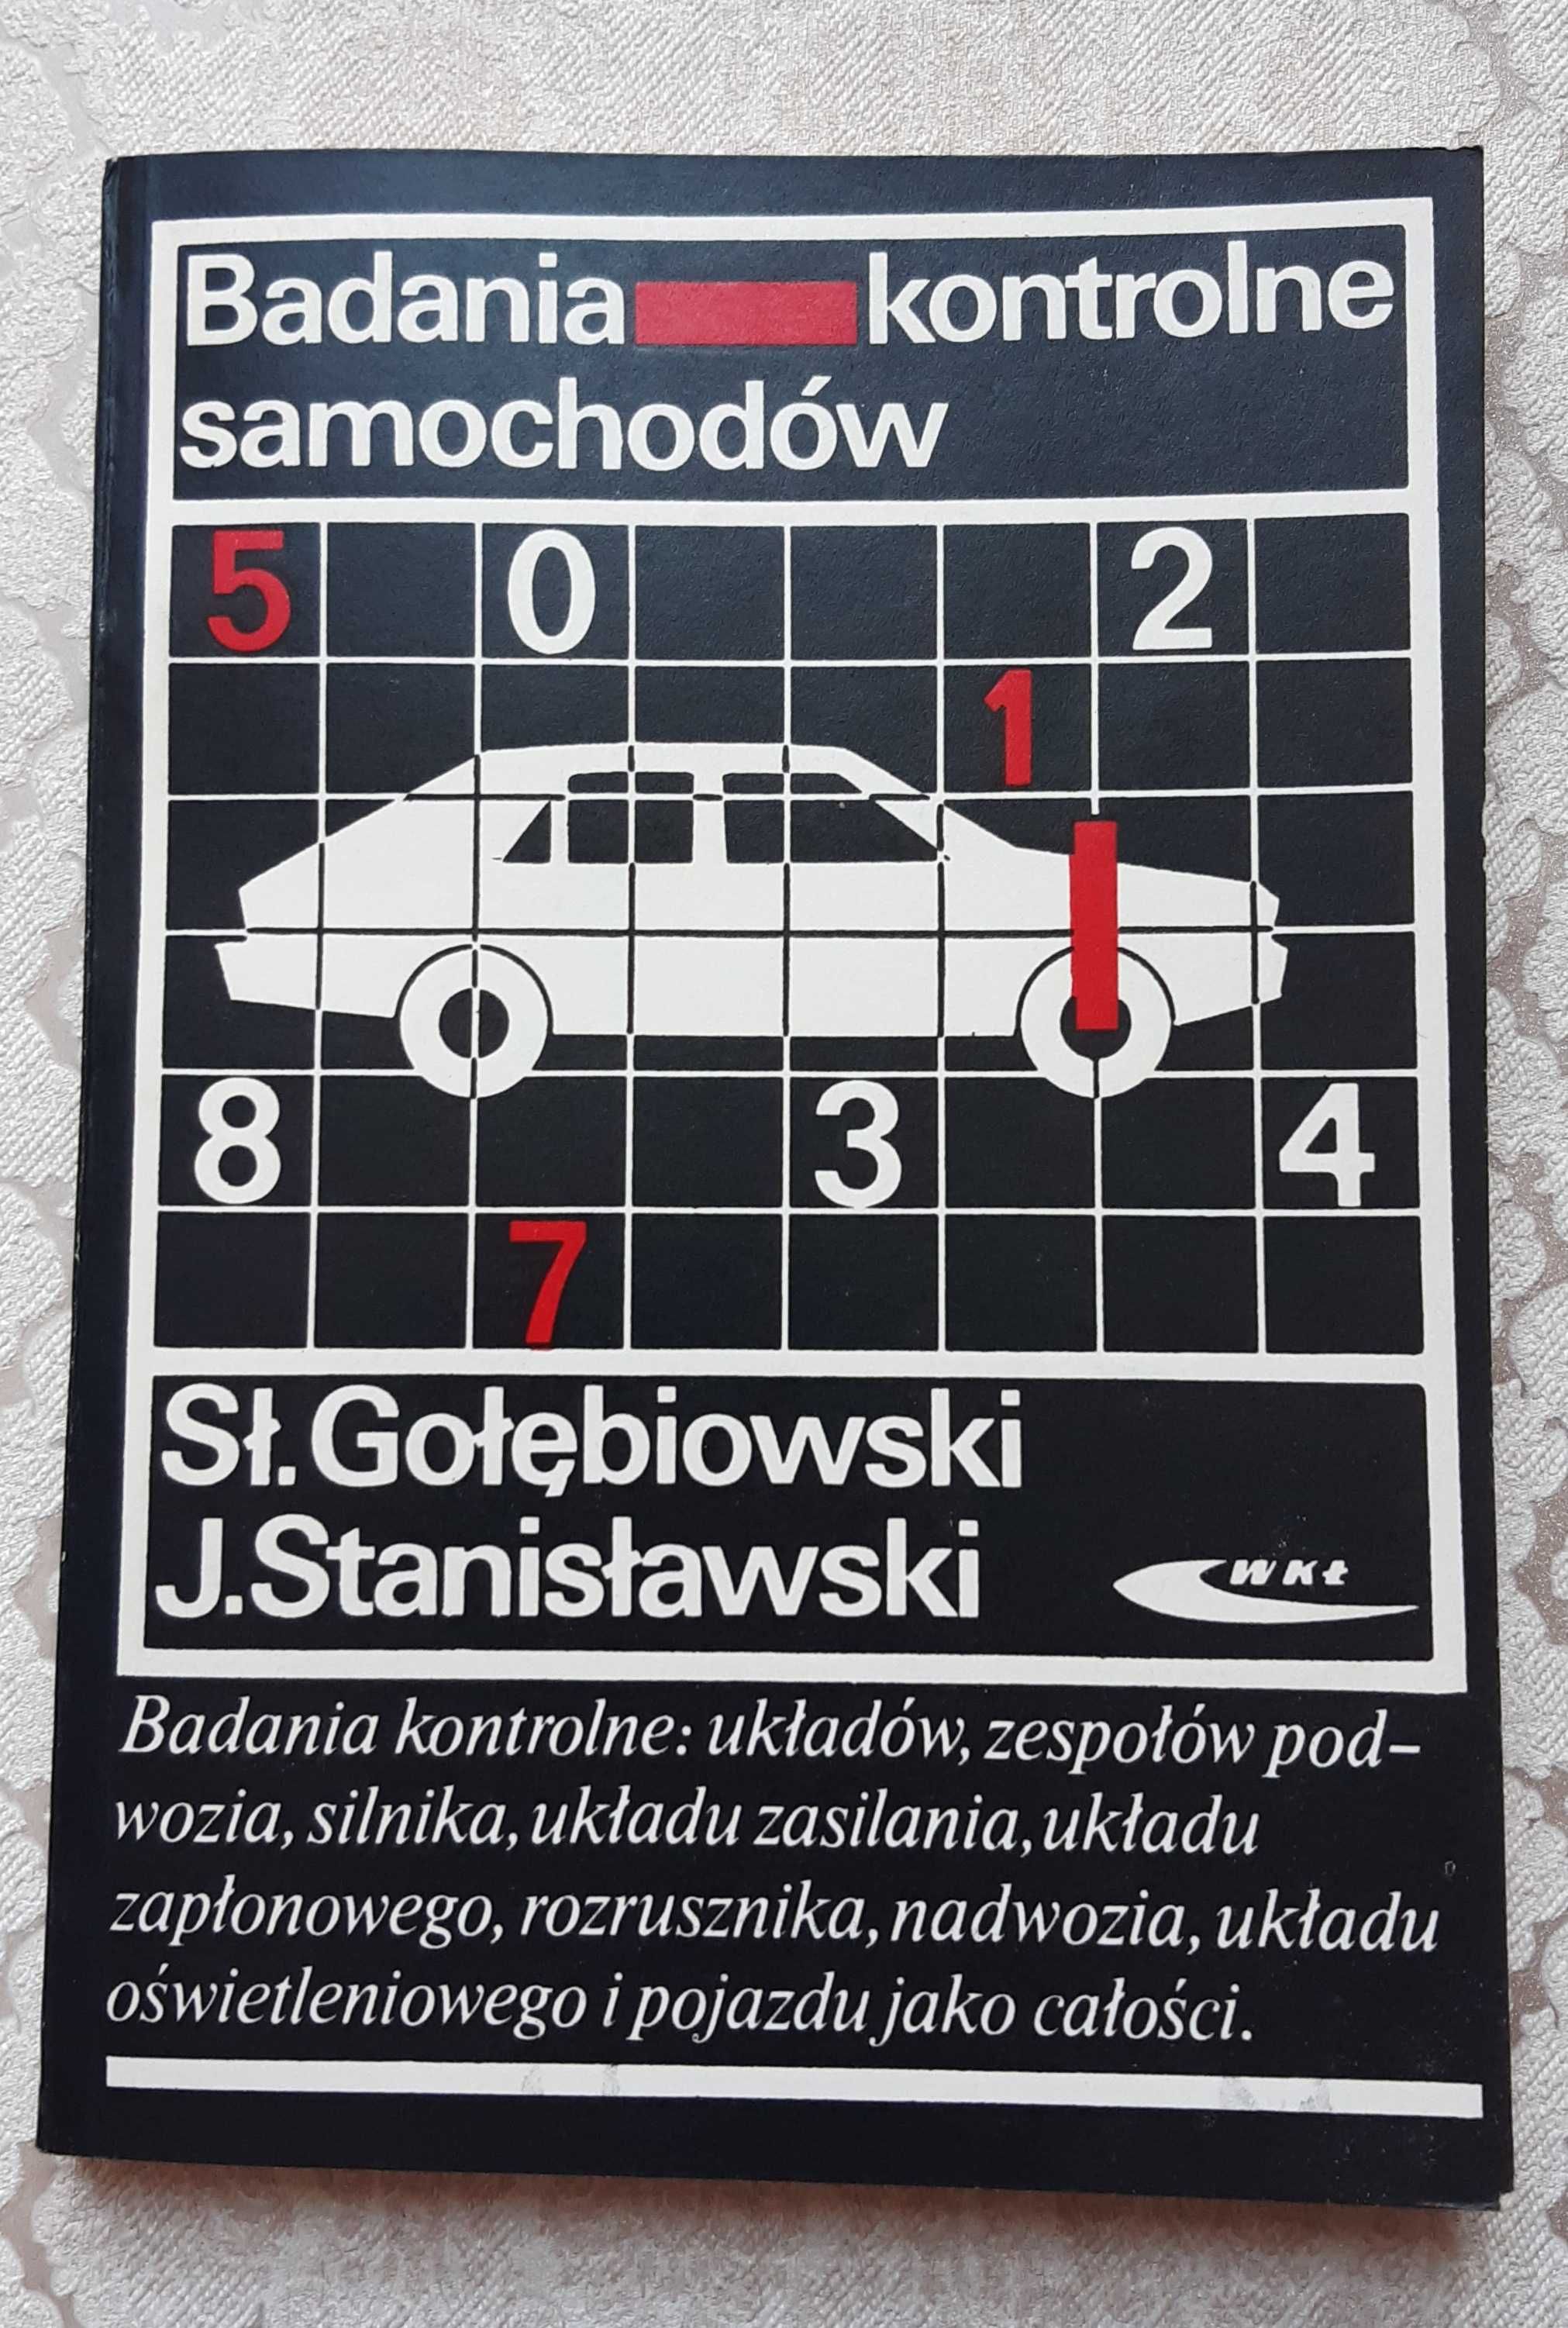 Książka "Badania kontrolne samochodów" Gołębiowski, Stanisławski